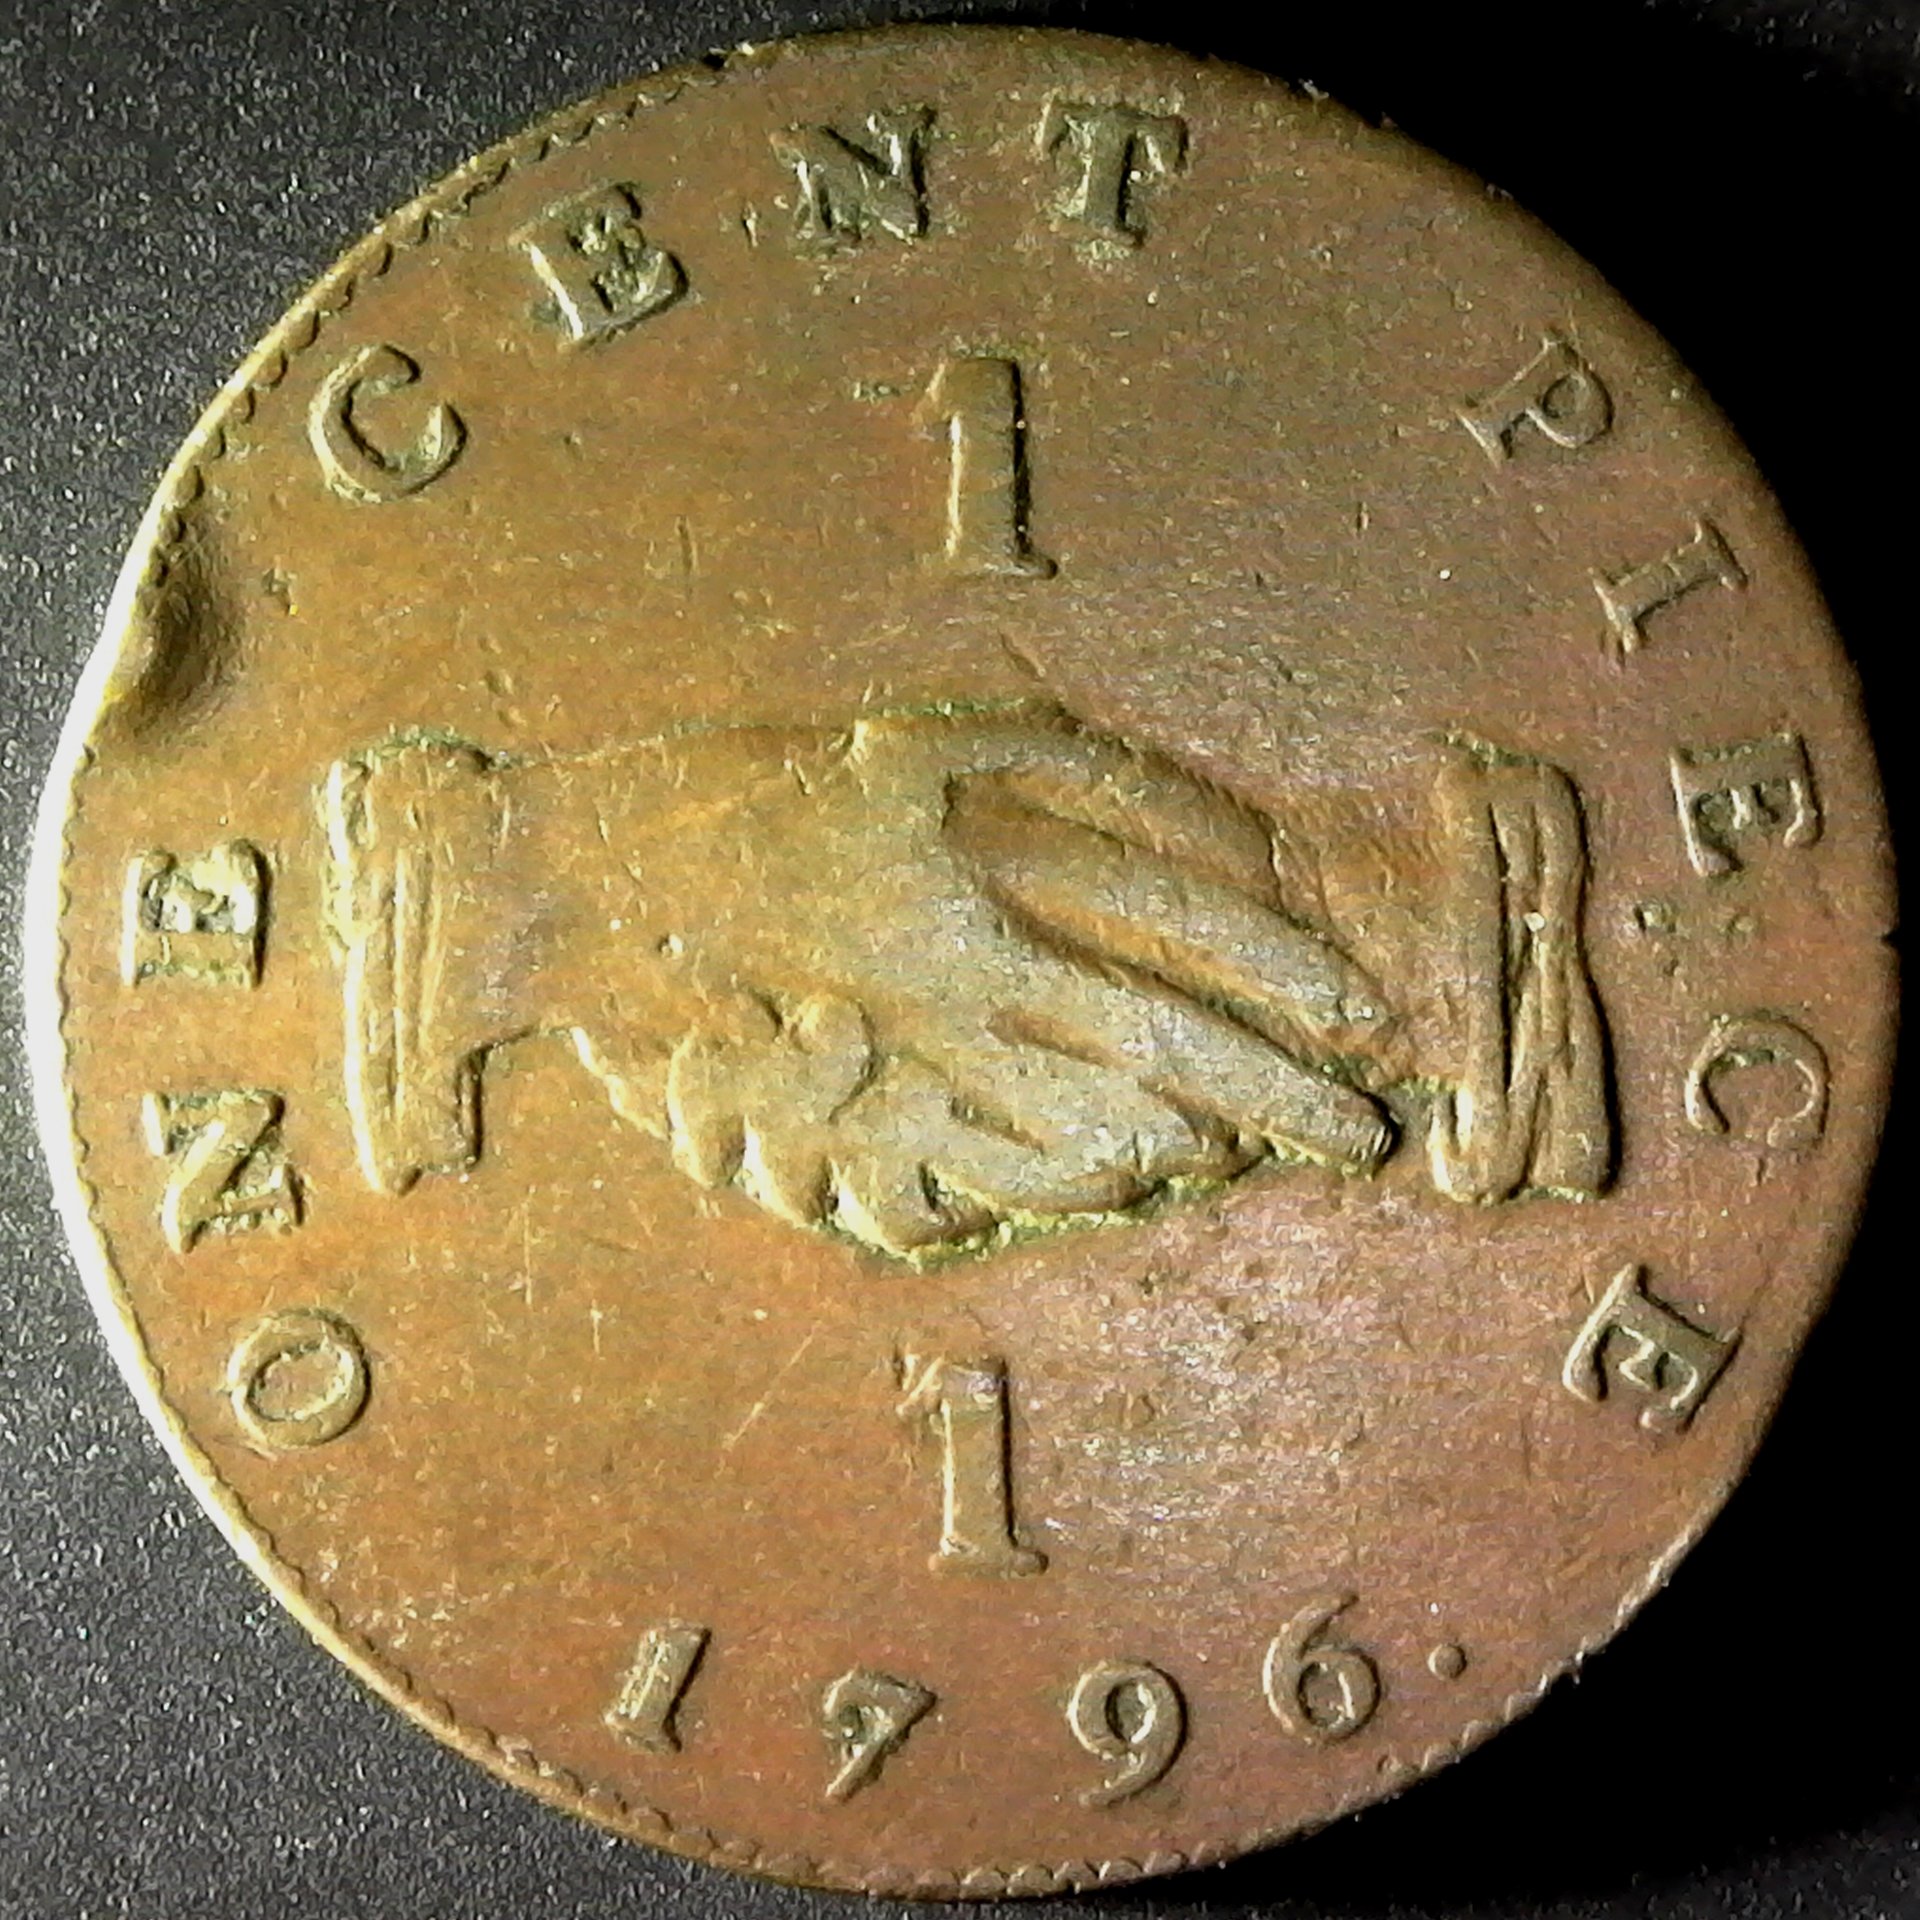 Sierra Leone Cent 1796 obv.jpg